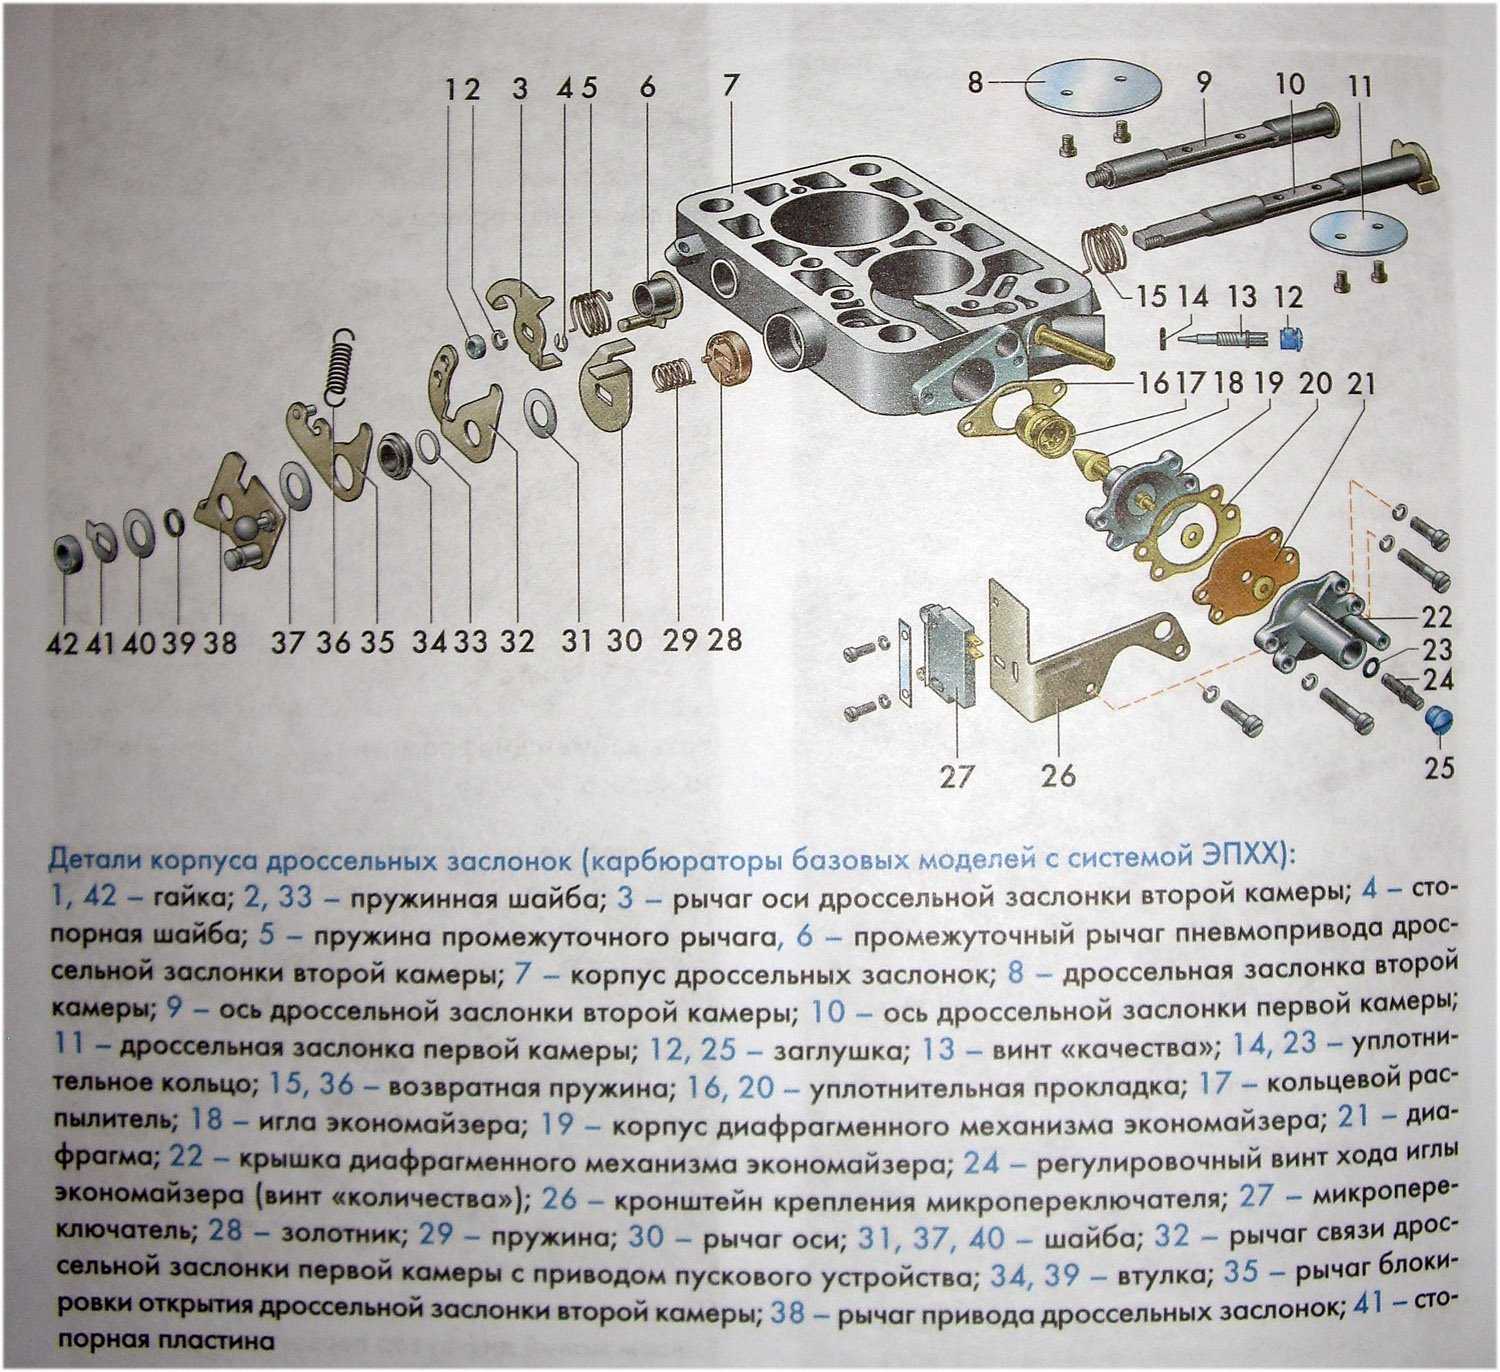 Проверка и ремонт экономайзера мощностных режимов карбюратора 2108, 21081, 21083 солекс | twokarburators.ru